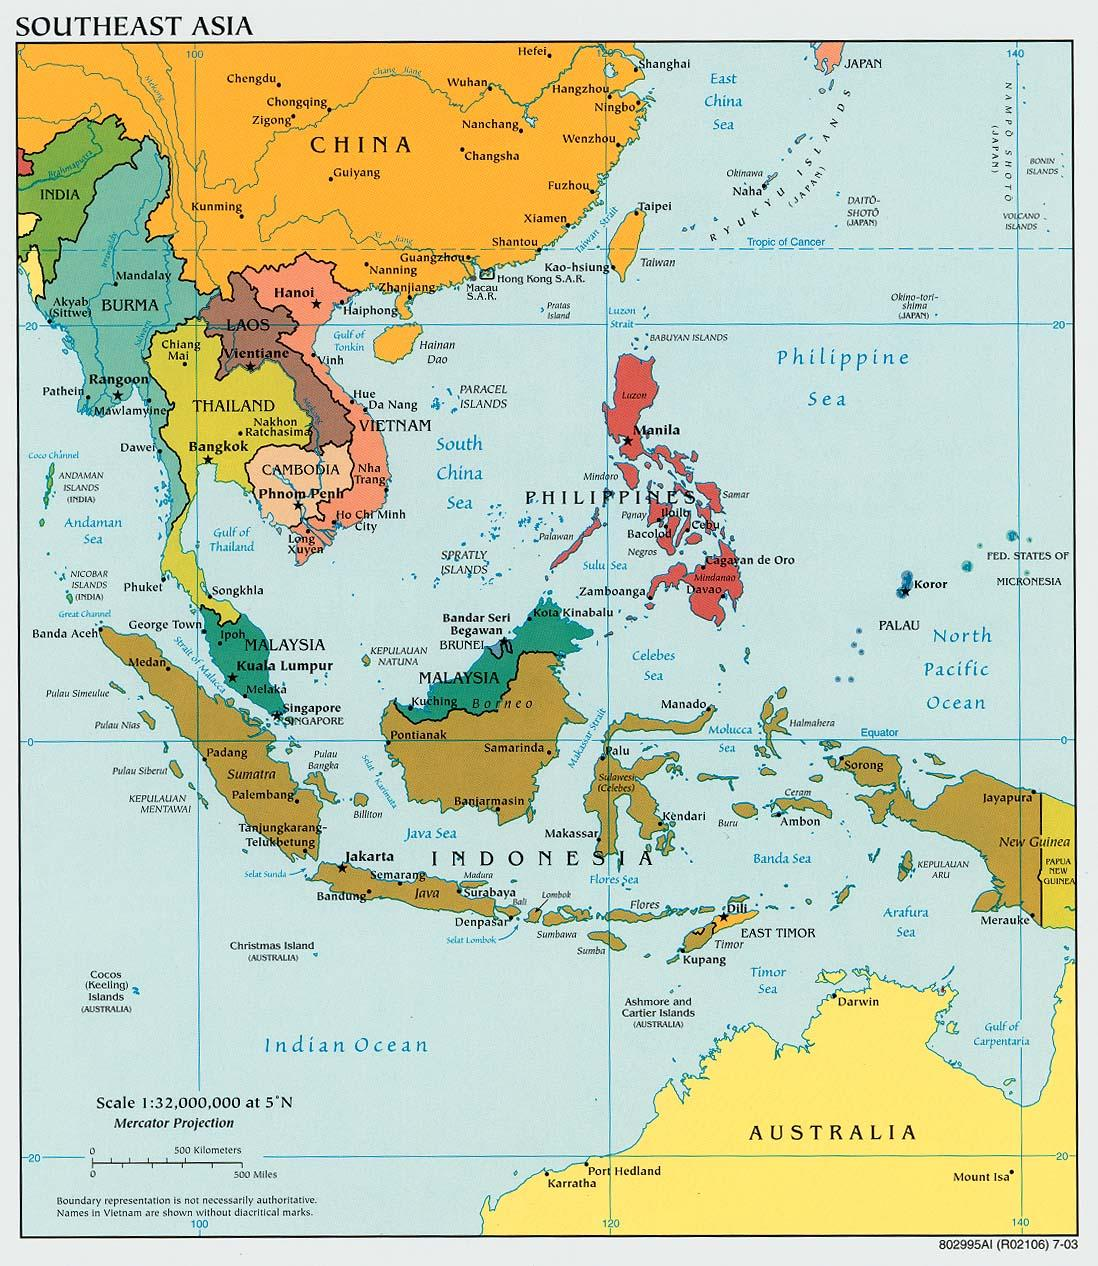 Η γεωστρατηγική θέση της Νοτιο- Ανατολικής Ασίας 1/2 Πηγή: Πολιτικός Χάρτης της Νότιο-